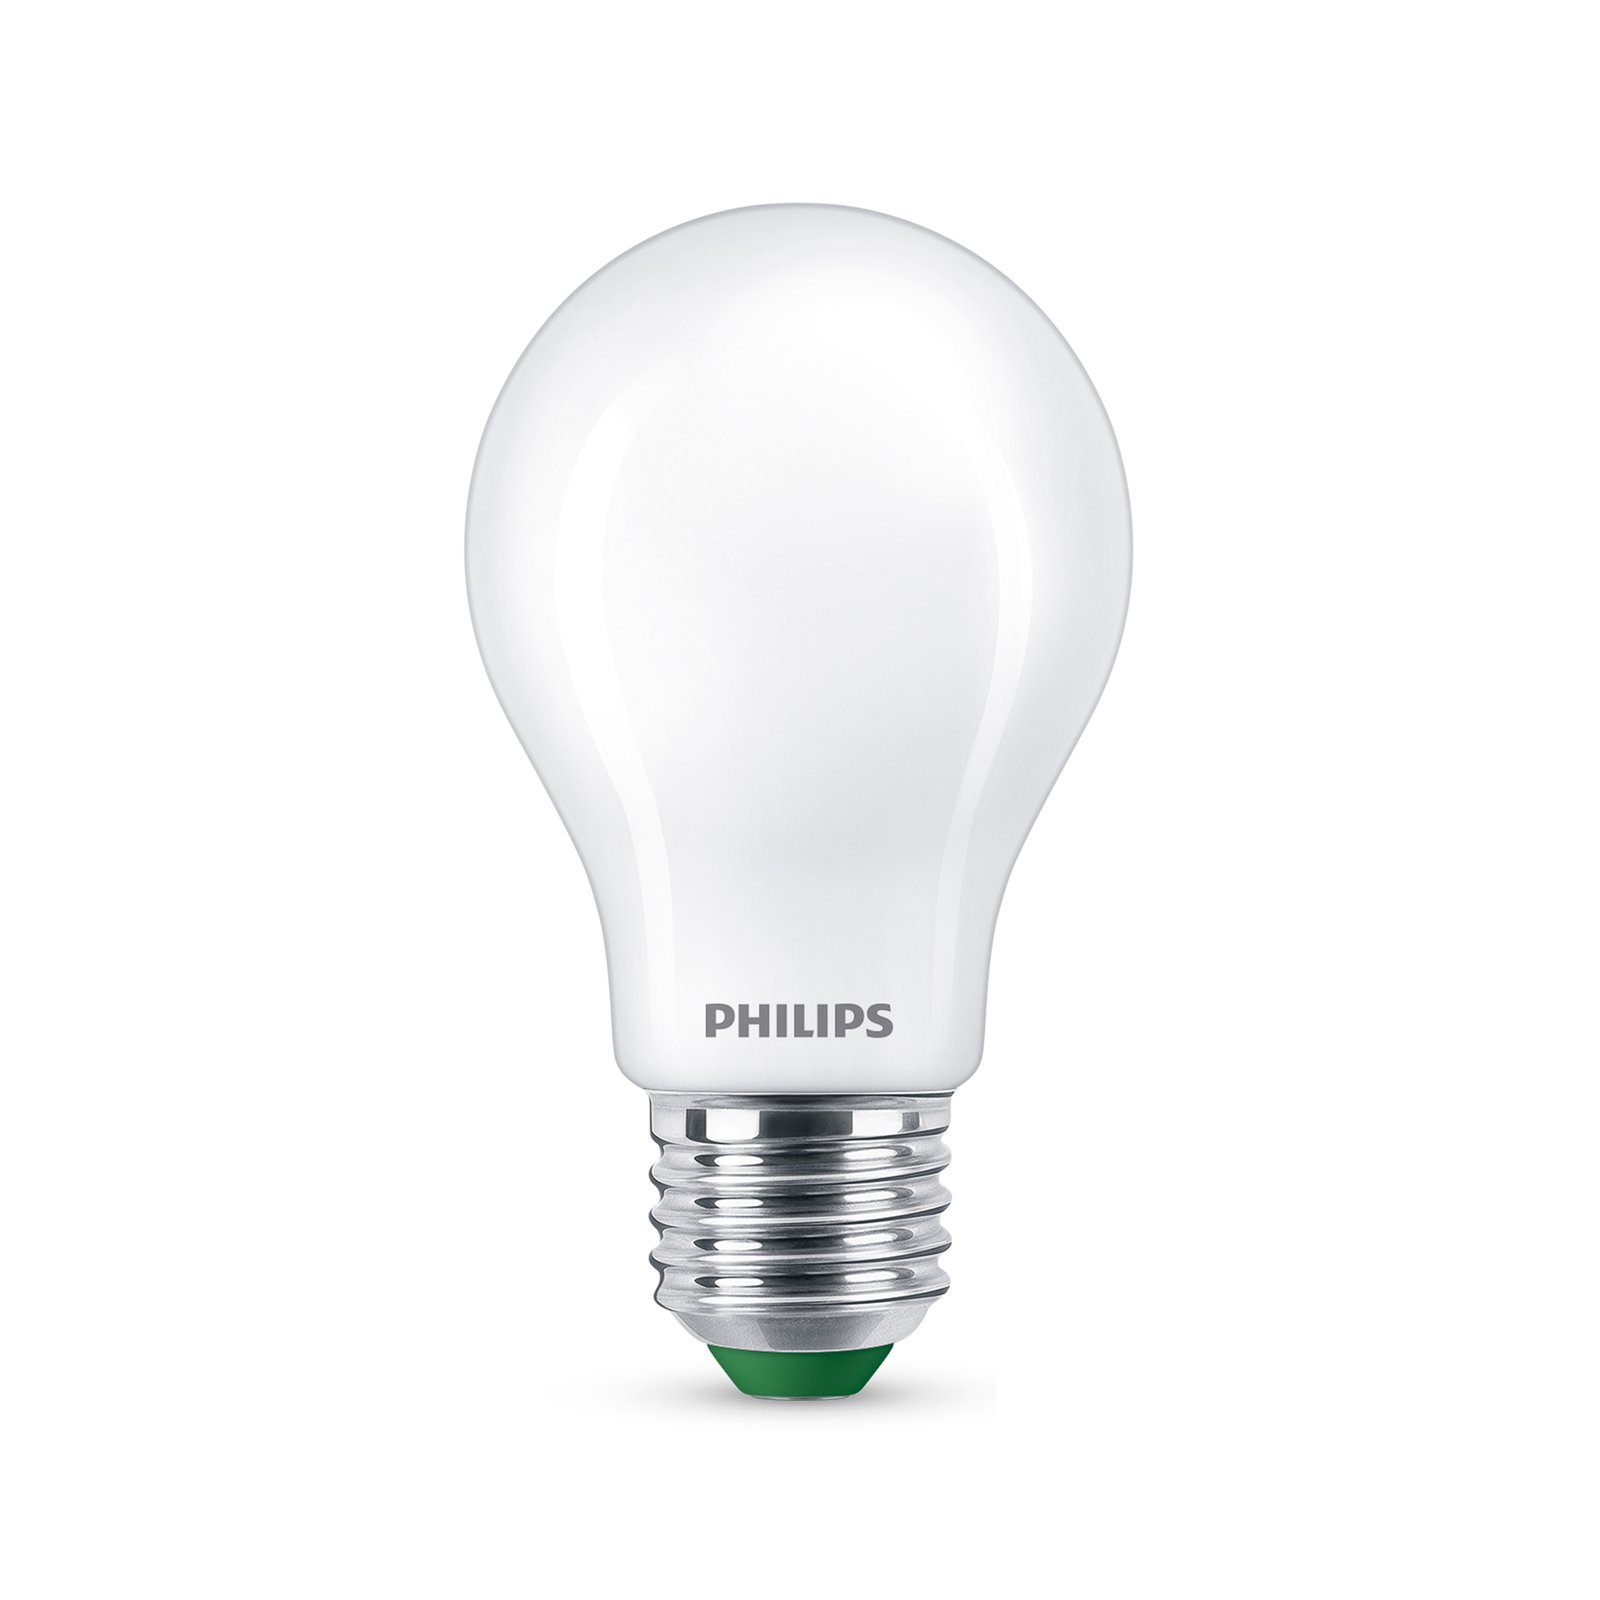 Philips LED E27 A60 4 W 840 lm mate 4 000 K